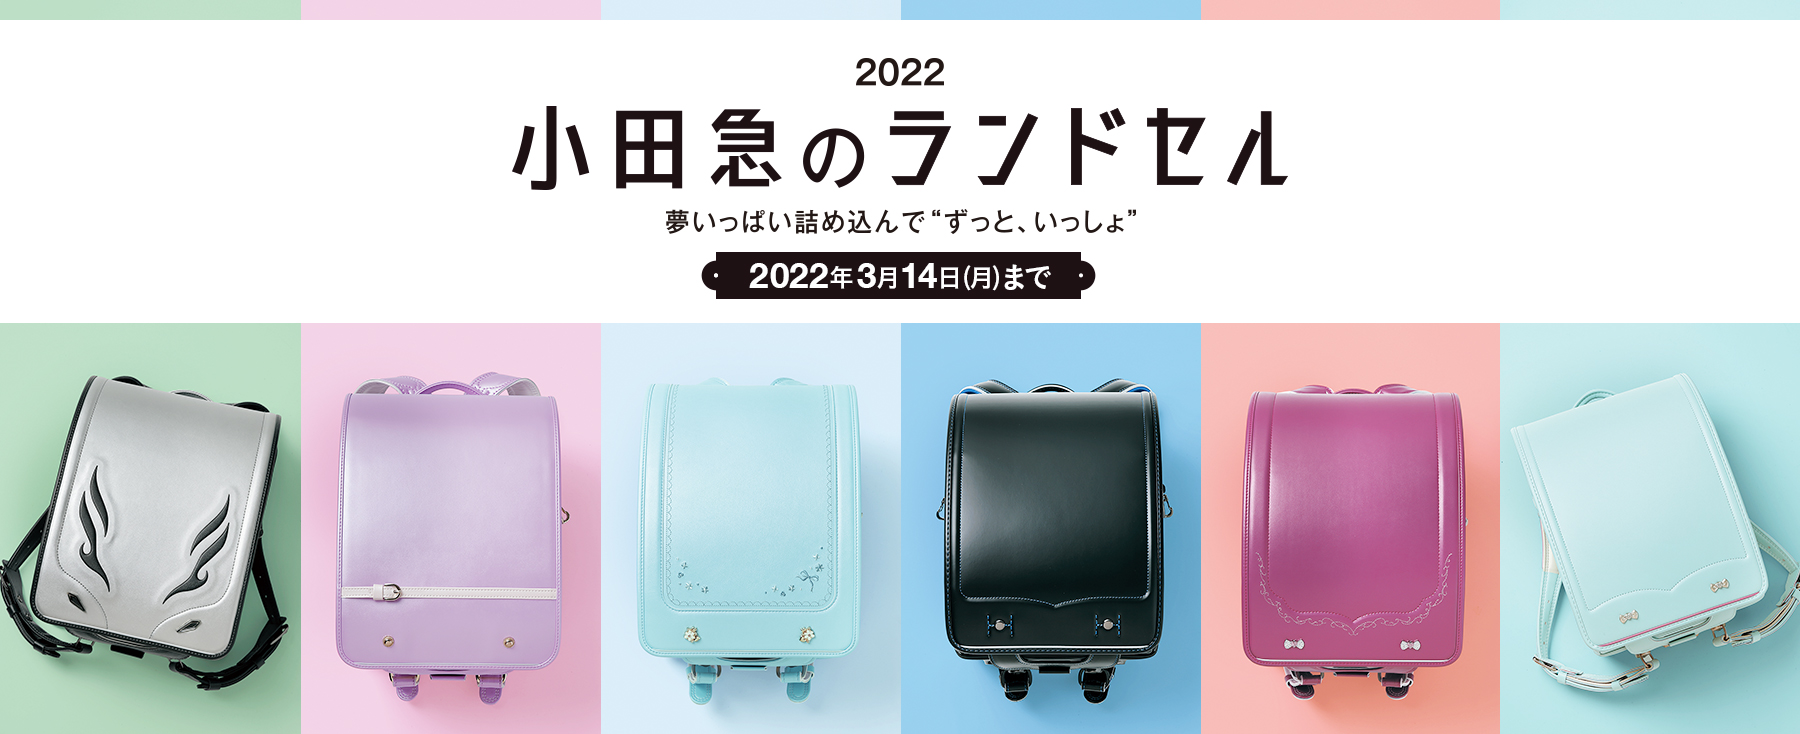 2022 小田急のランドセル 夢いっぱい詰め込んで“ずっと、いっしょ” 2022年3月14日（月）まで